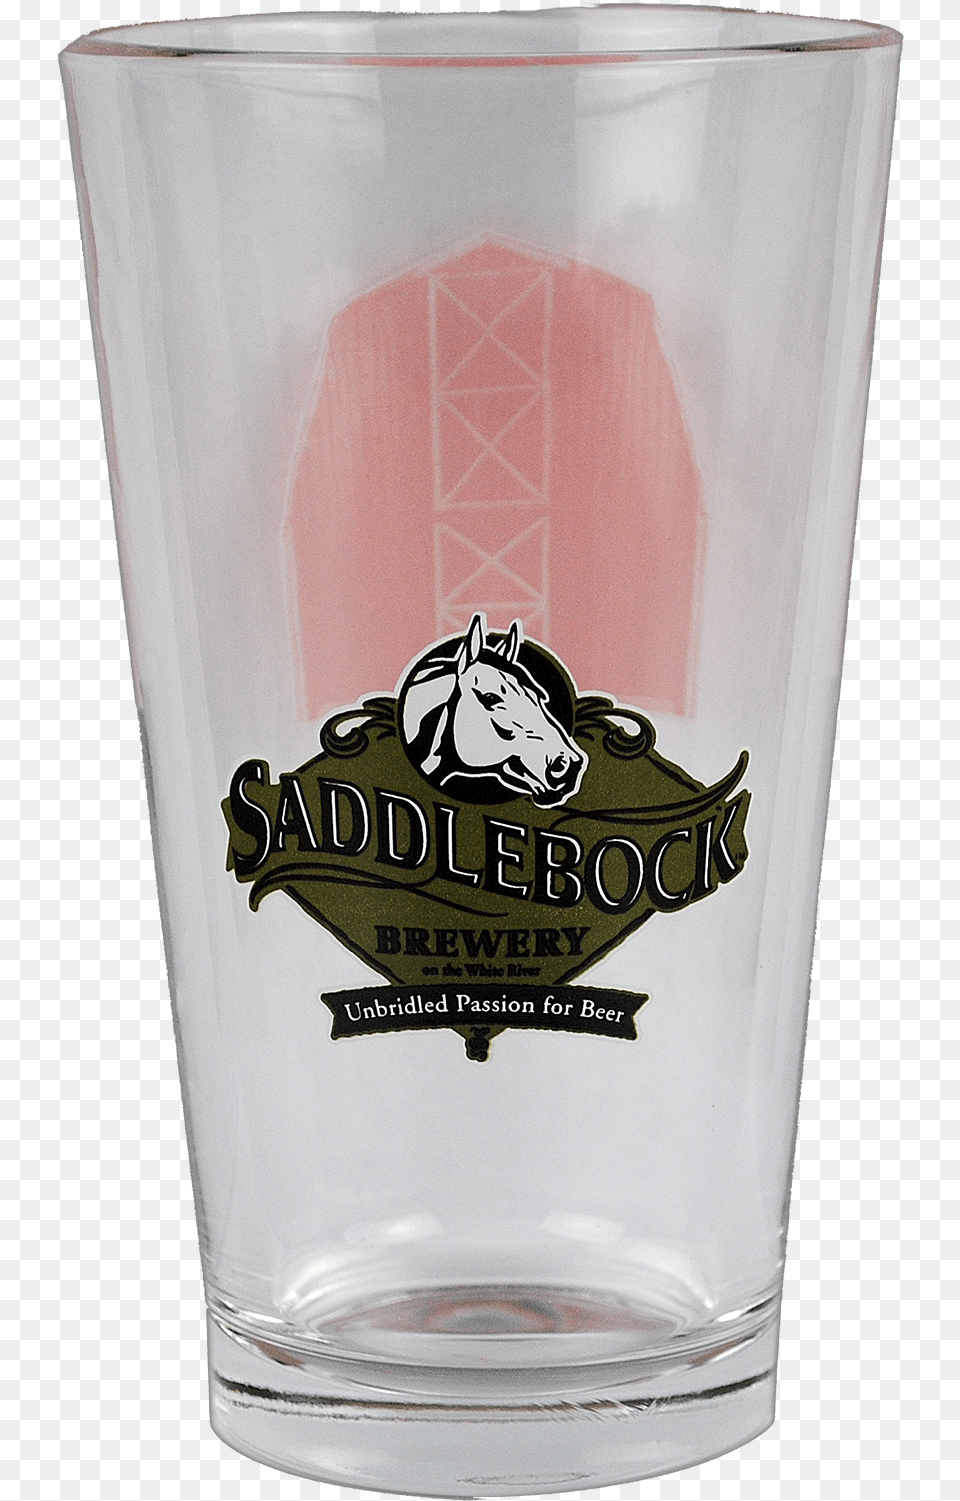 Saddlebock Pint Glass Saddlebock Brewery, Alcohol, Beer, Beer Glass, Beverage Free Transparent Png